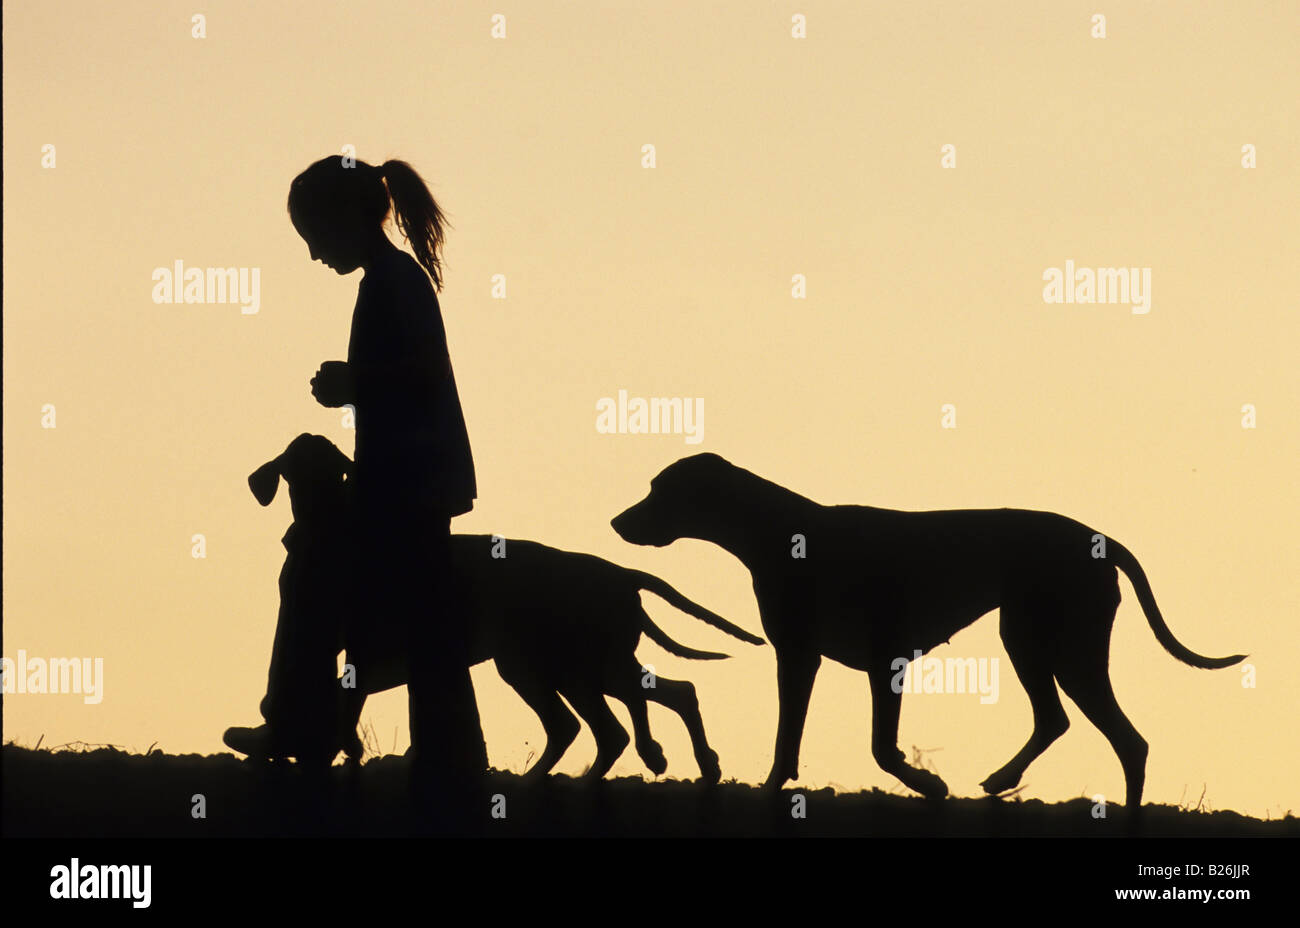 Le Rhodesian Ridgeback (Canis lupus familiaris). Fille qui marche avec trois chiens silhouetté contre le ciel du soir Banque D'Images